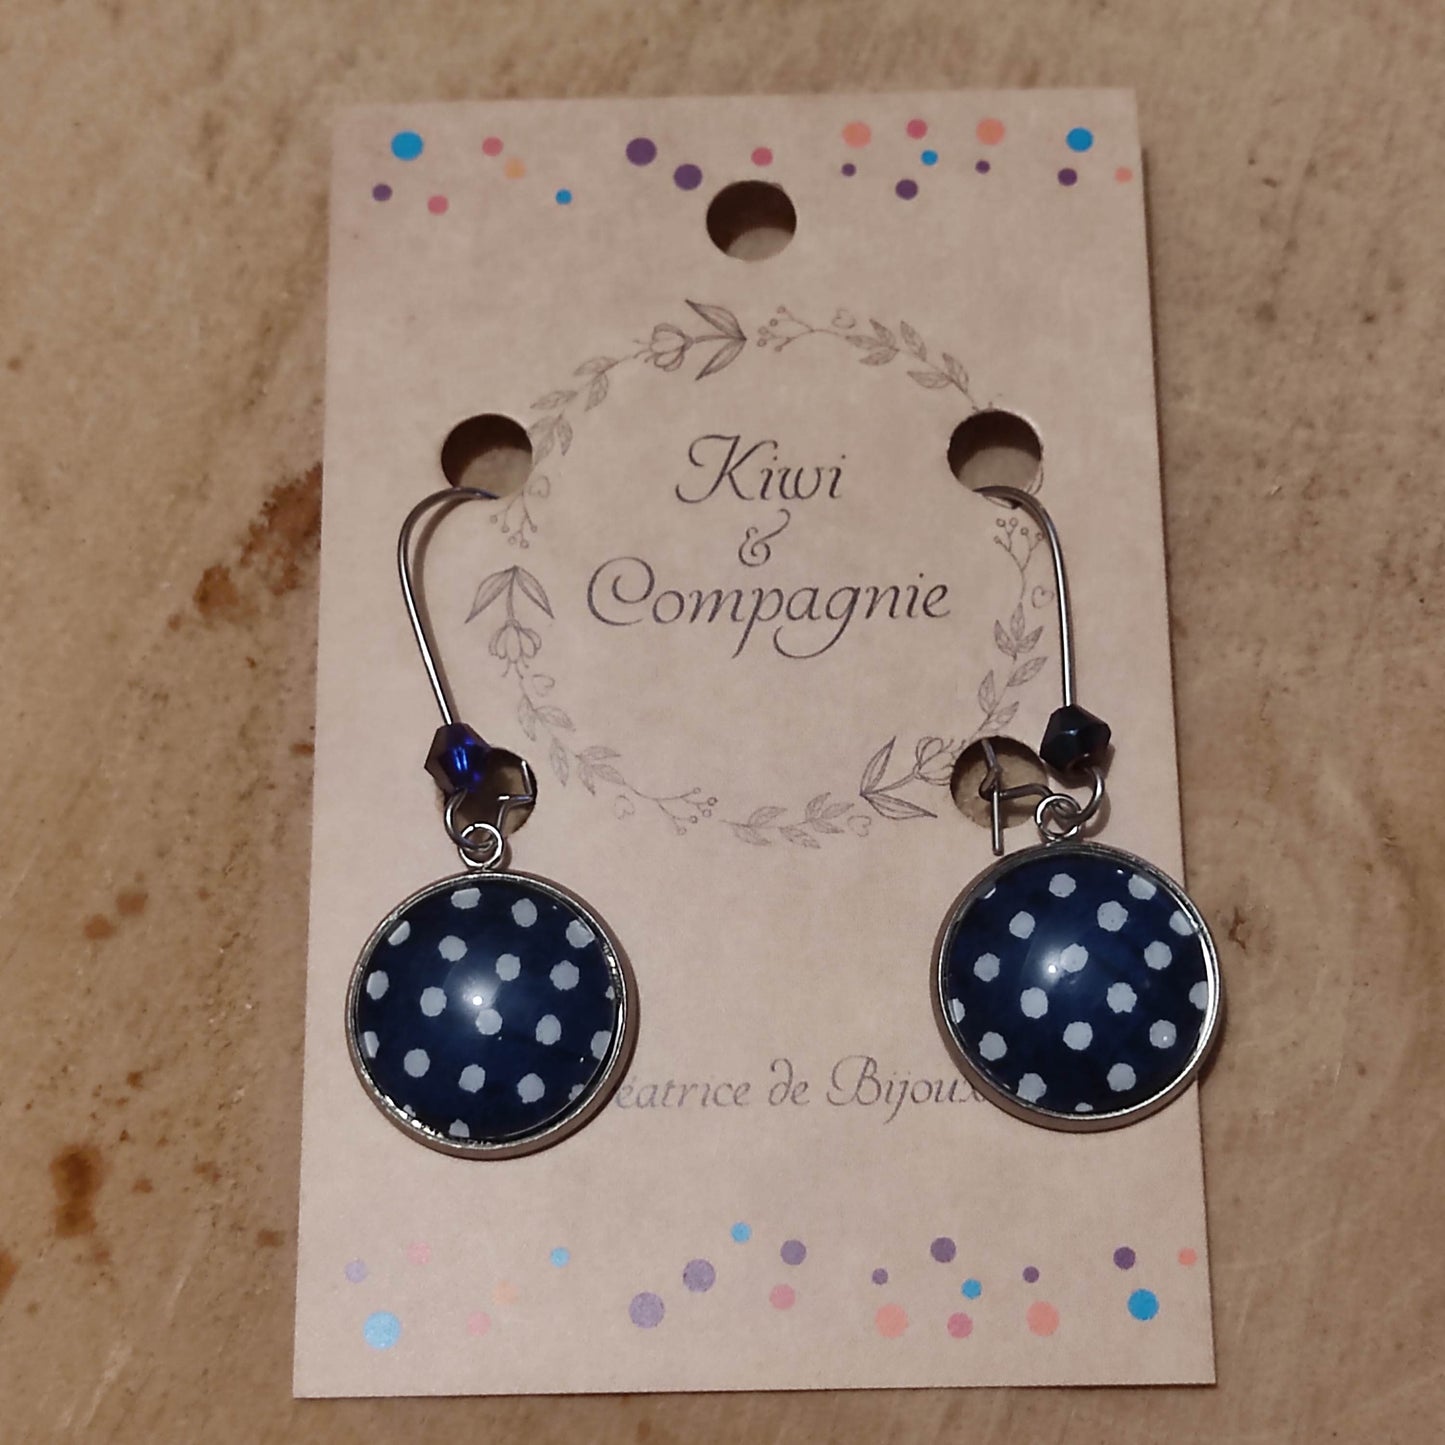 Boucles d'oreilles pendantes crochets fermés - Cabochon rond 16mm - acier inoxydable - Pois blancs, fond bleu marine - Perle bleu marine